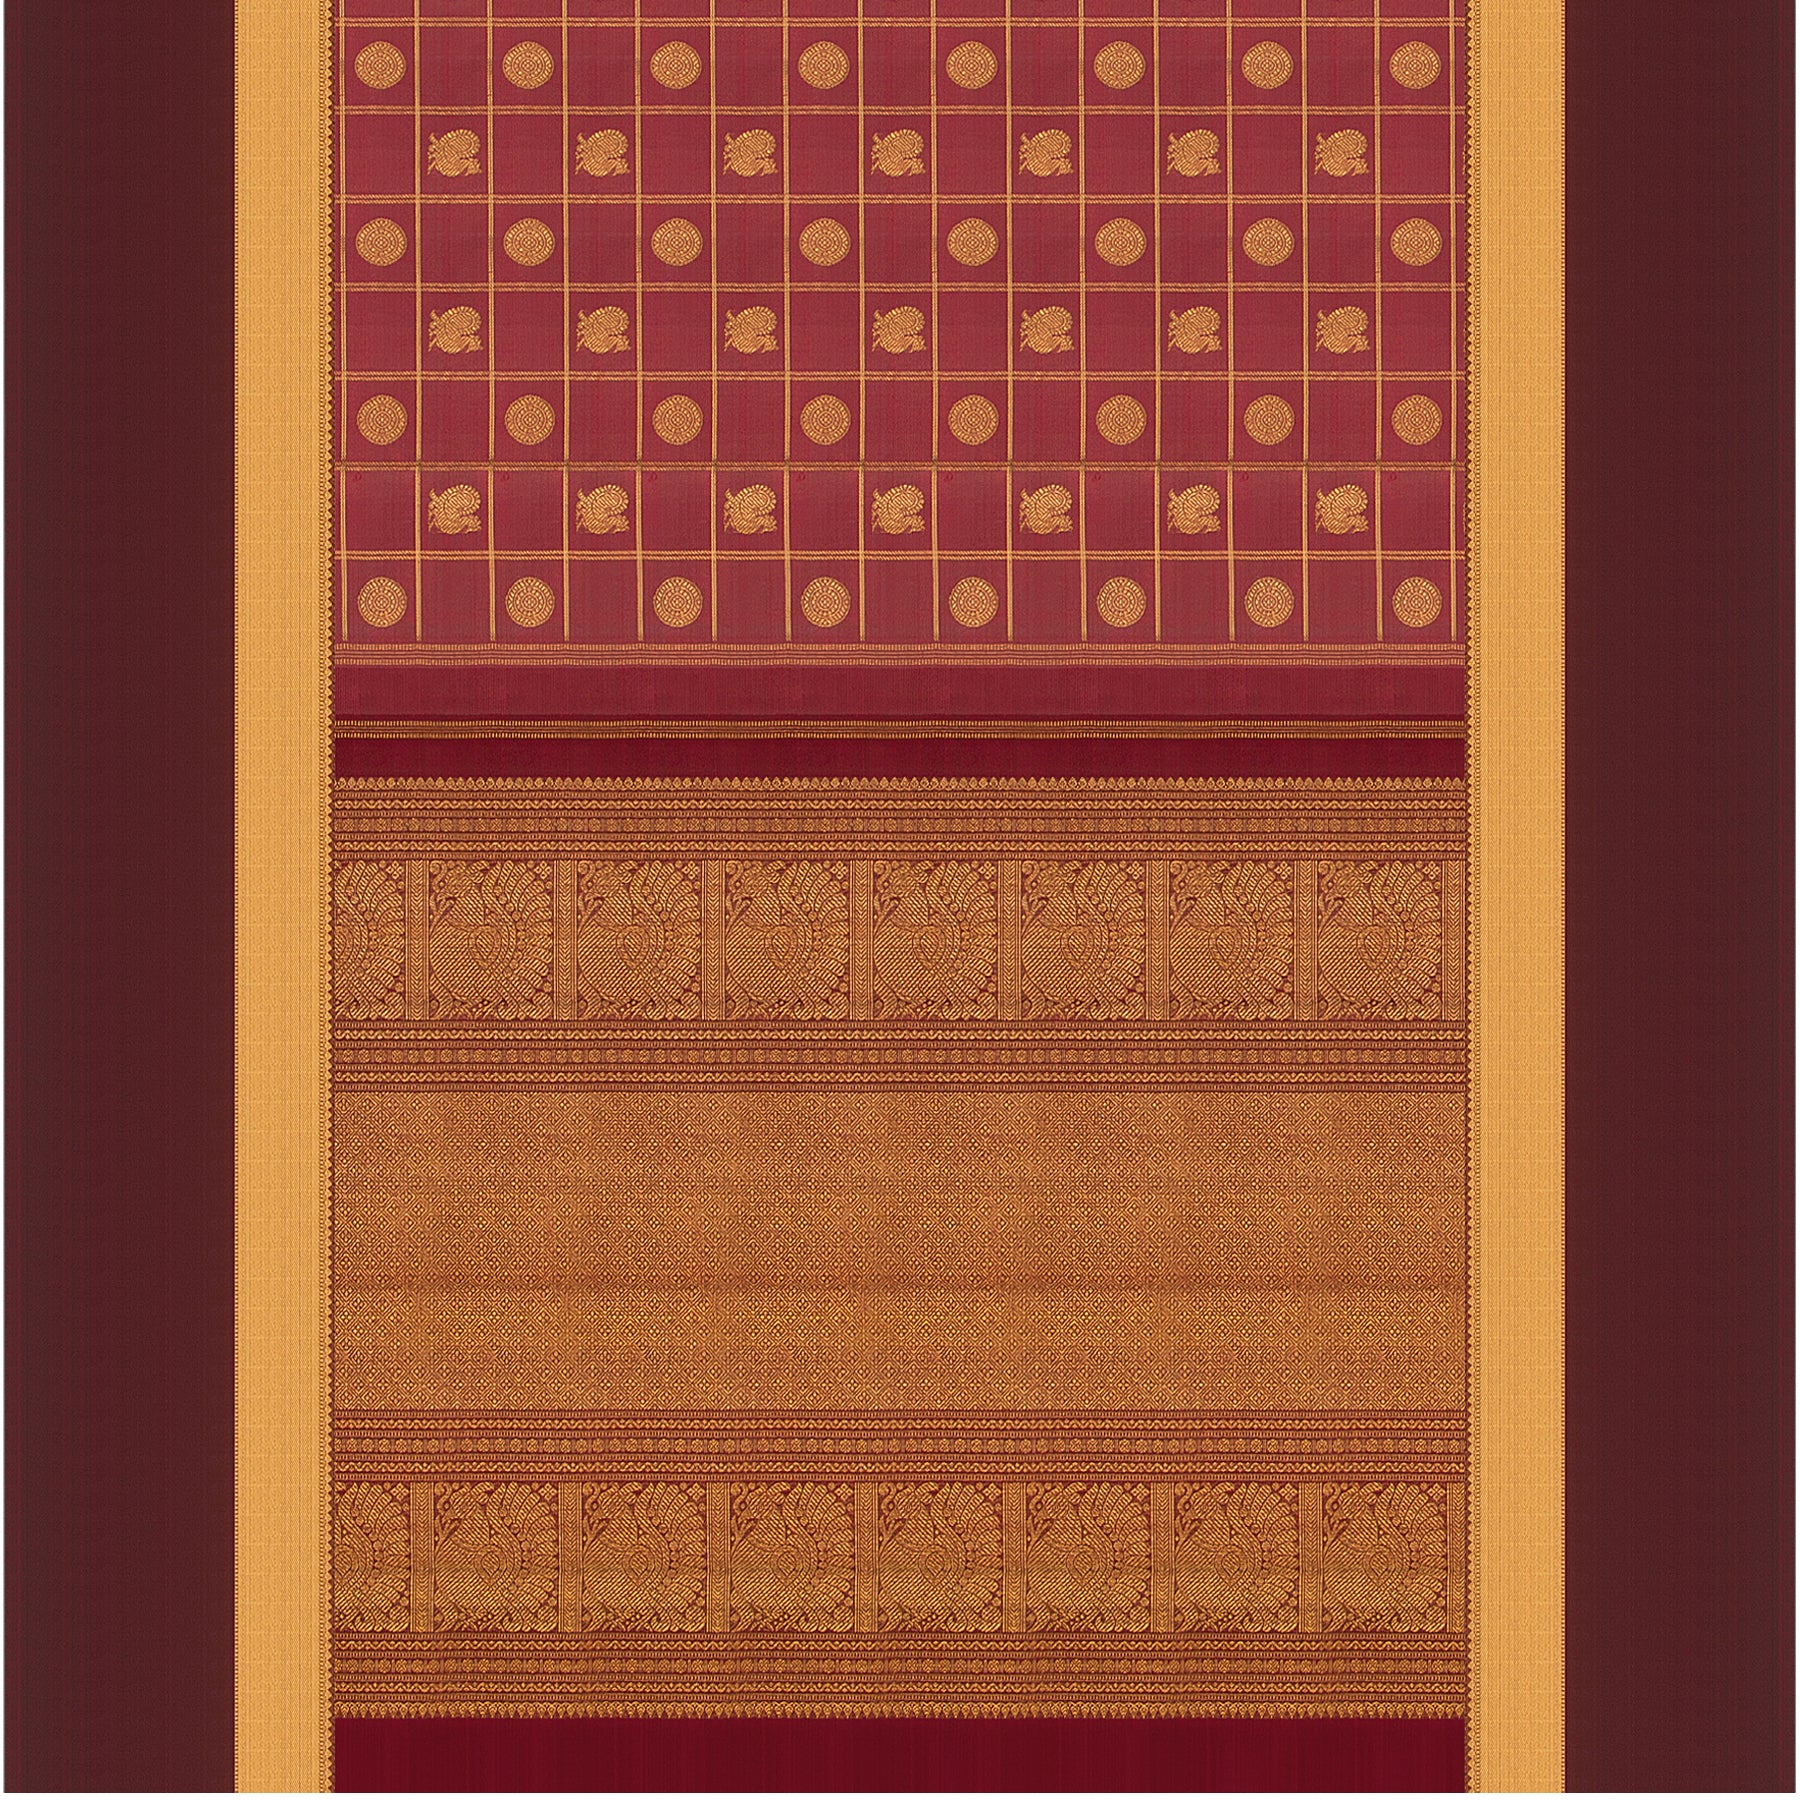 Kanakavalli Kanjivaram Silk Sari 22-599-HS001-03836 - Full View